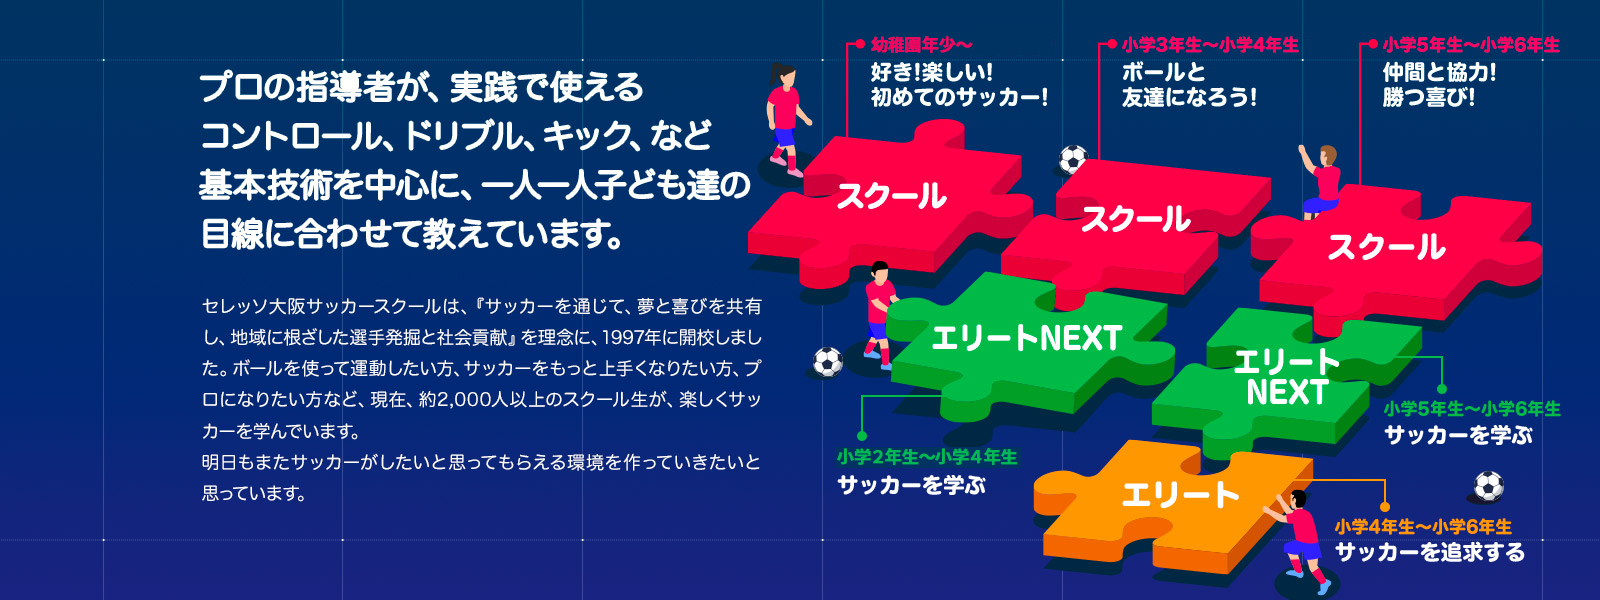 スクール概要 子どものサッカースクール セレッソ大阪スポーツクラブ公式サイト